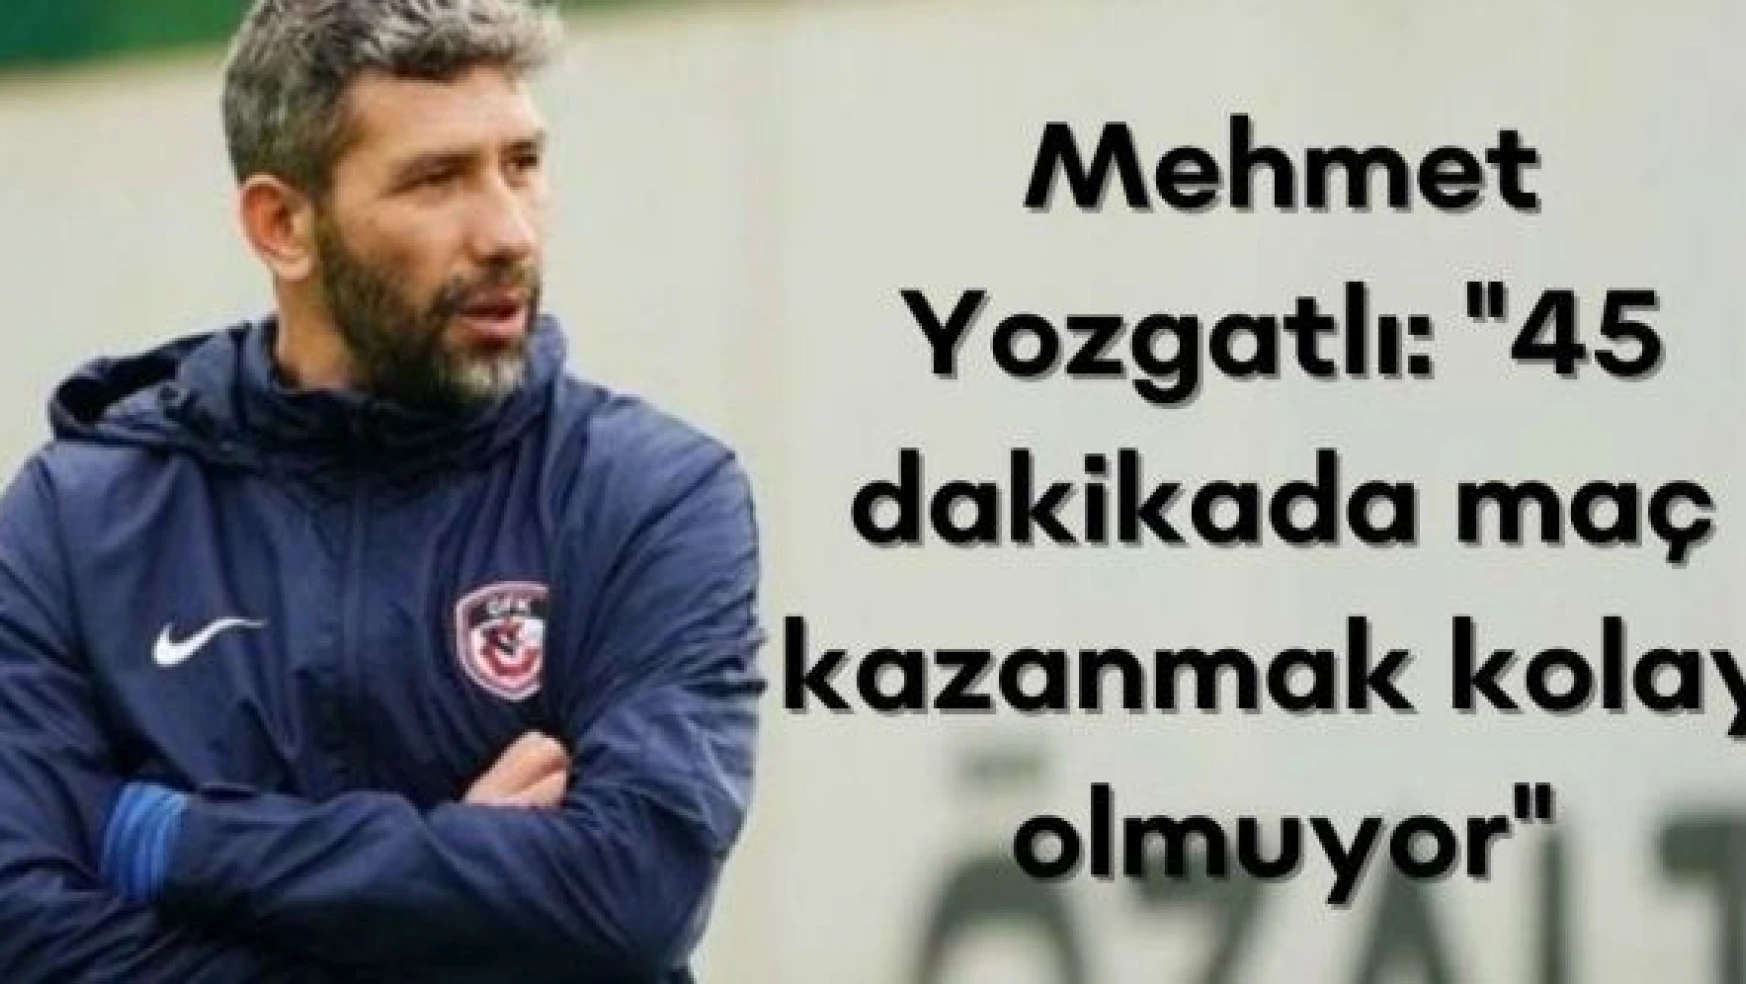 Mehmet Yozgatlı: &quot45 dakikada maç kazanmak kolay olmuyor"